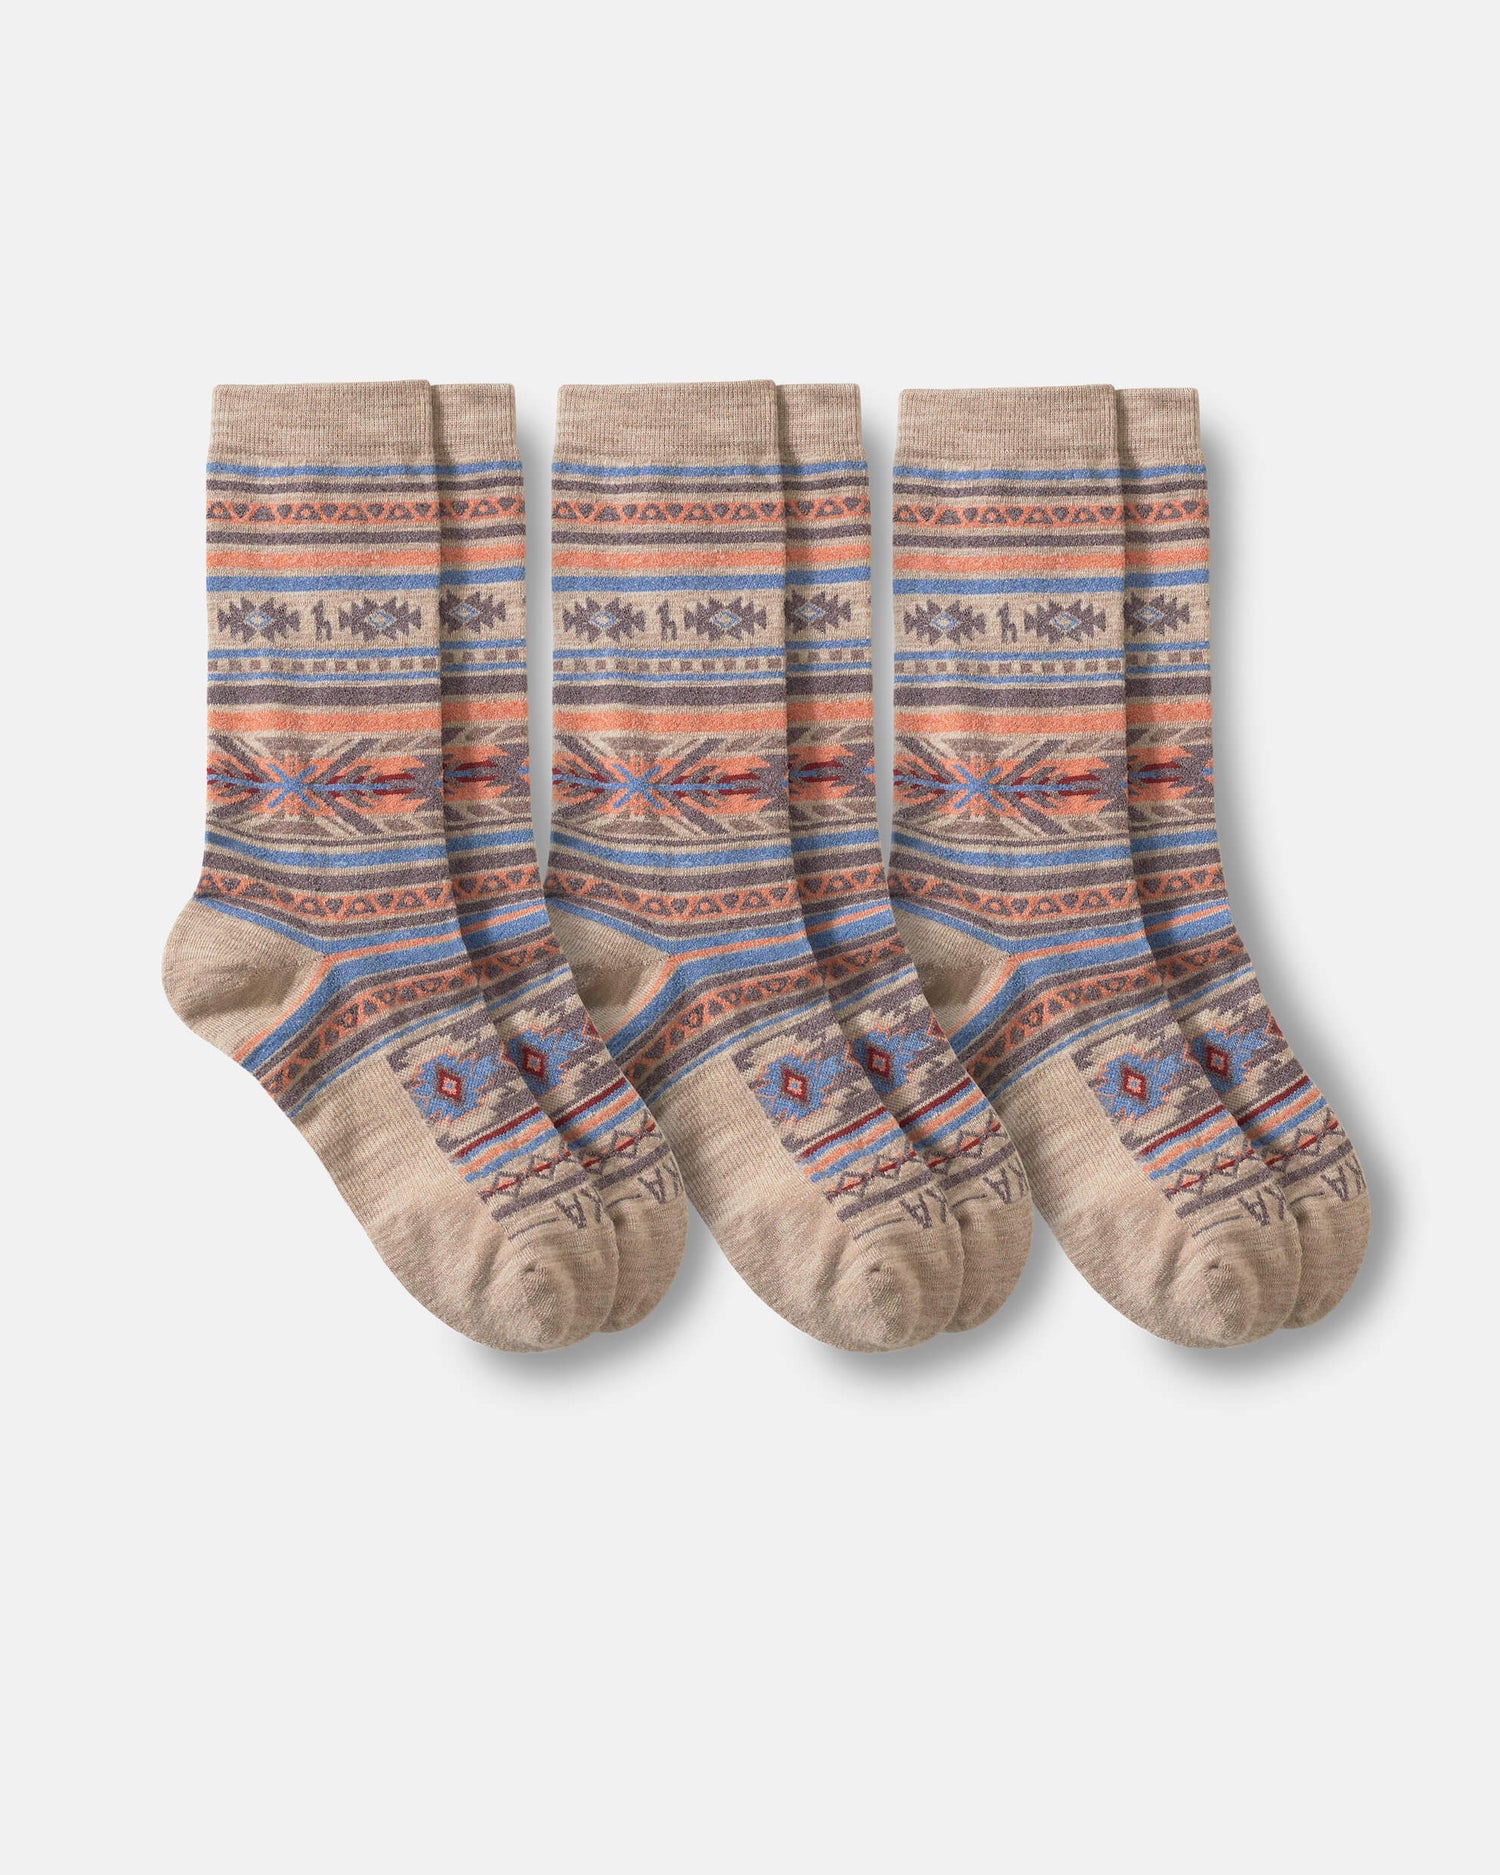 Inca socks flat lay 3 pairs